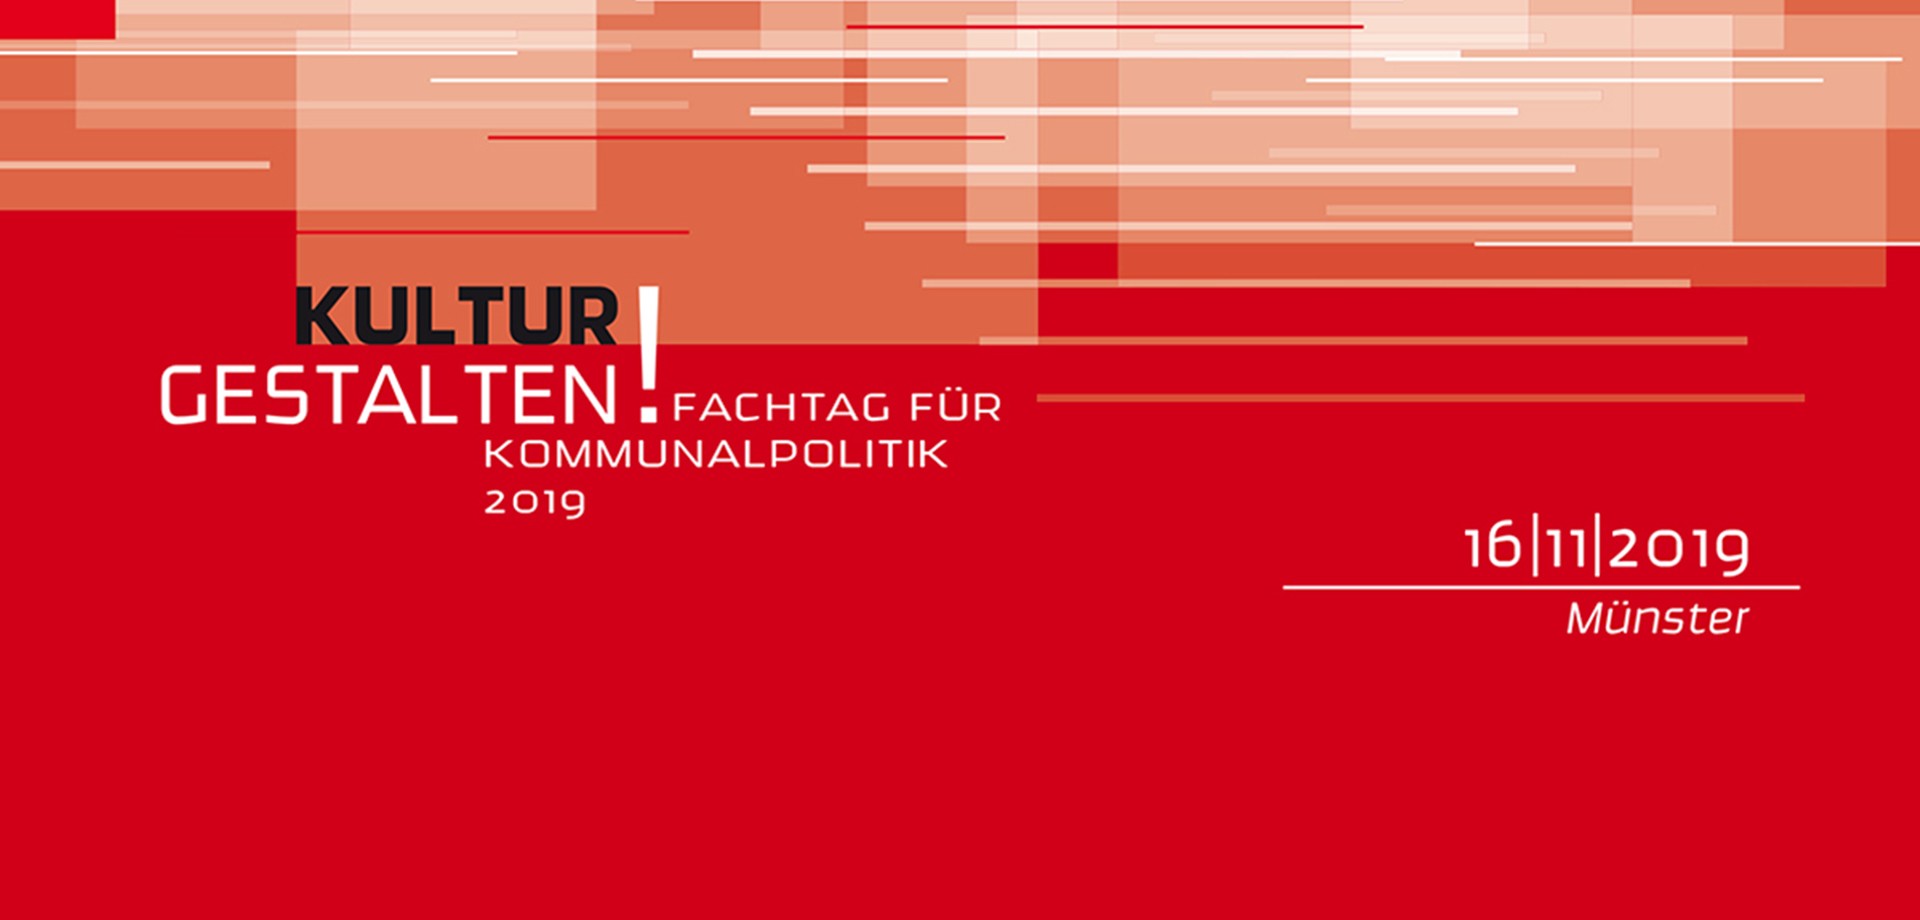 Das rot-weiße Keyvisual des Fachtages für Kommunalpolitik 2019